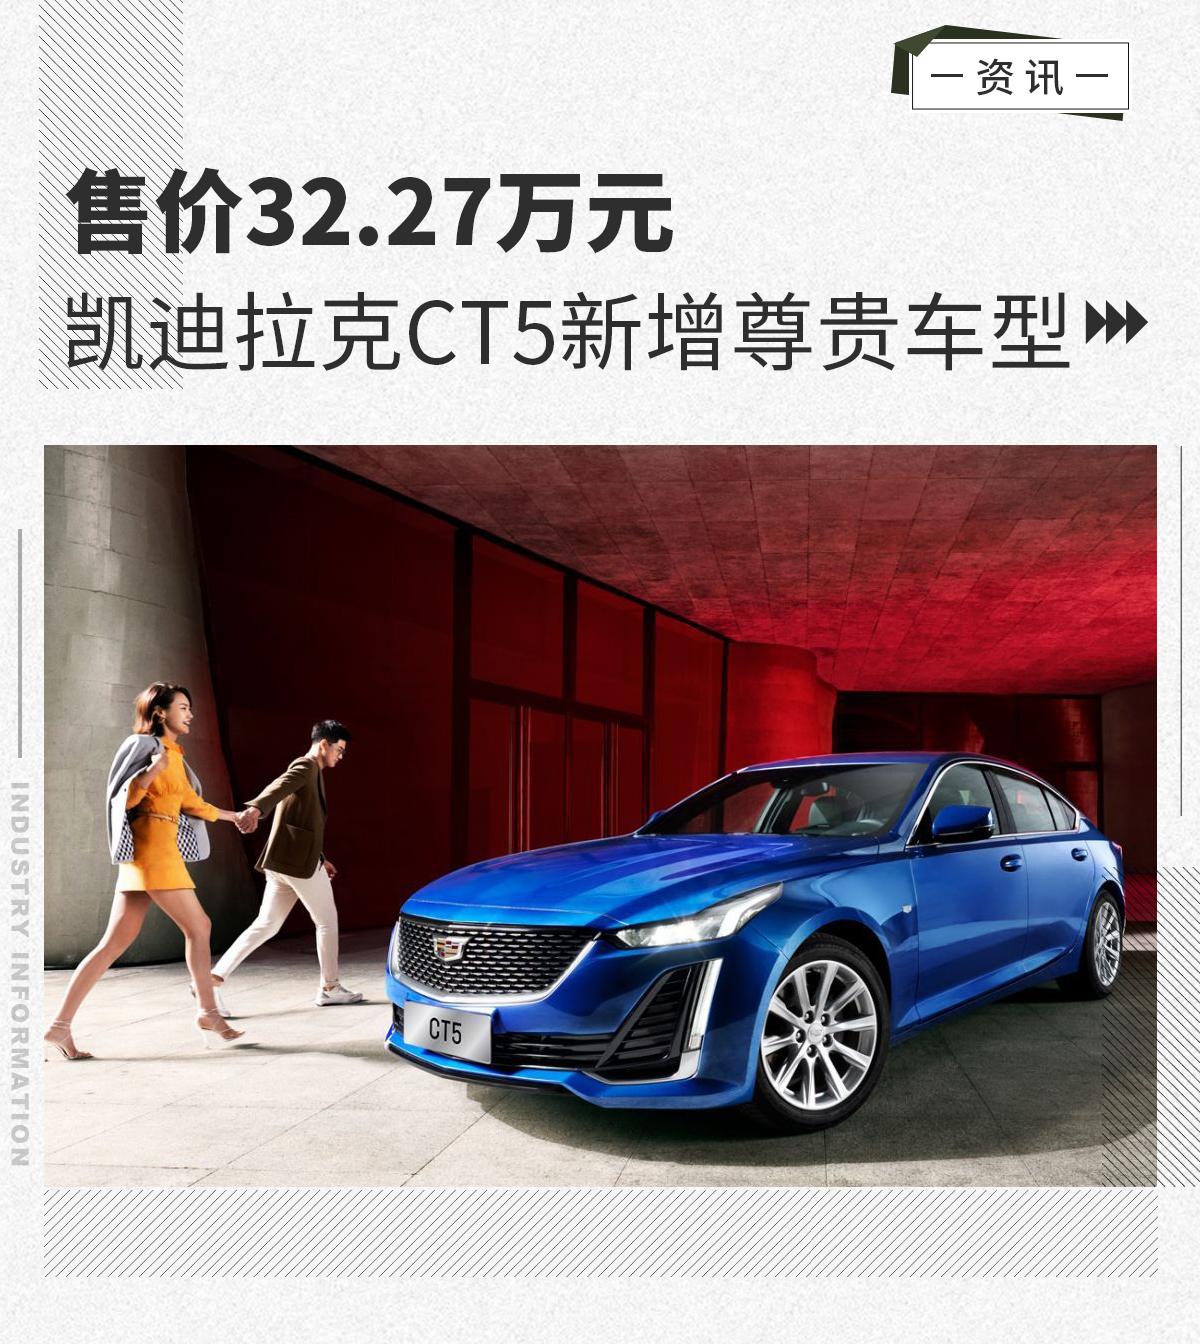 售价32.27万元 凯迪拉克ct5新增尊贵车型